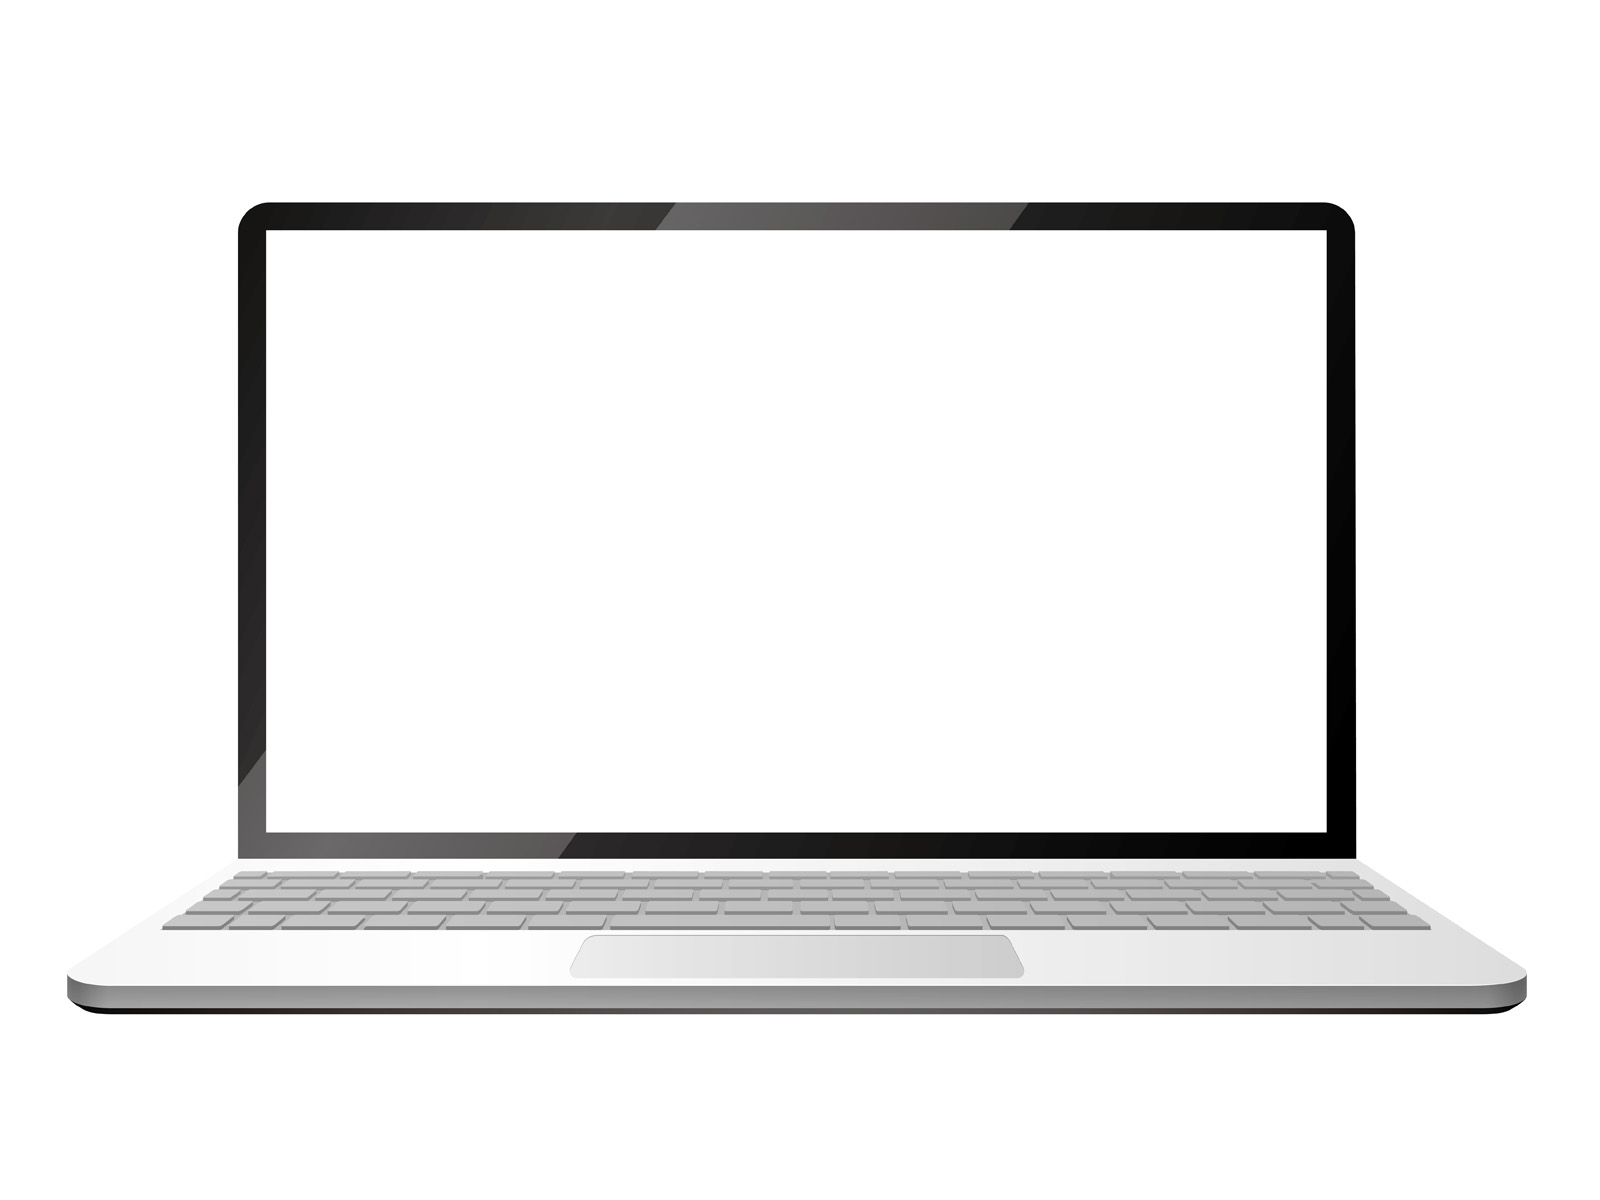 Laptop Vector: Nếu bạn đang cần một hình ảnh laptop trong định dạng vector, thì đừng bỏ lỡ cơ hội tải xuống hình ảnh miễn phí này! Với chất lượng hoàn hảo và độ sắc nét cao, hình ảnh laptop vector này sẽ làm cho các thiết kế của bạn trở nên hoàn hảo hơn rất nhiều. 